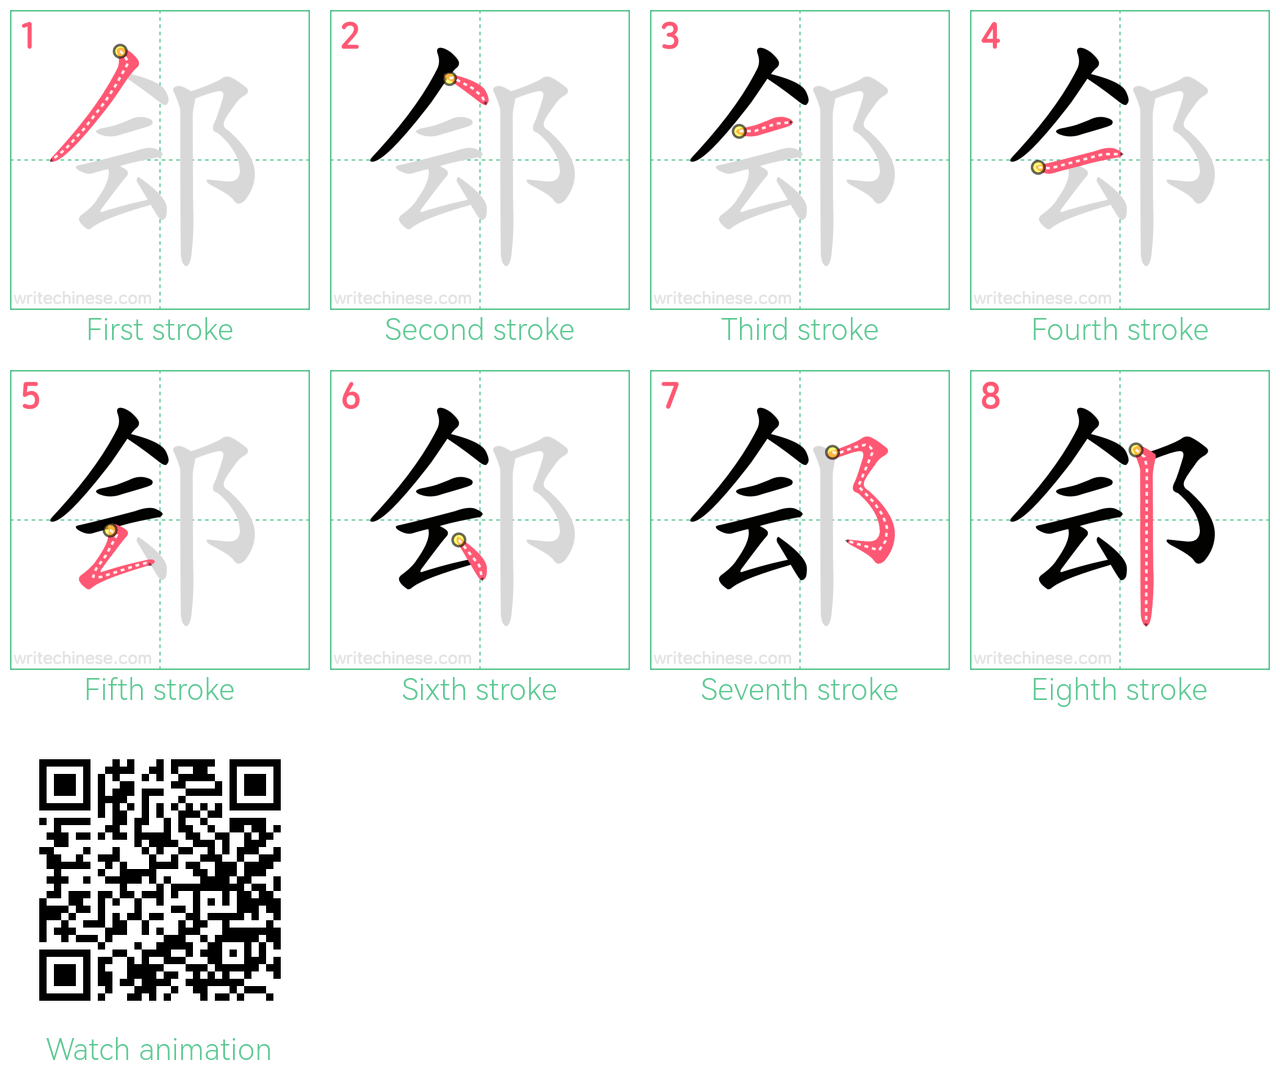 郐 step-by-step stroke order diagrams